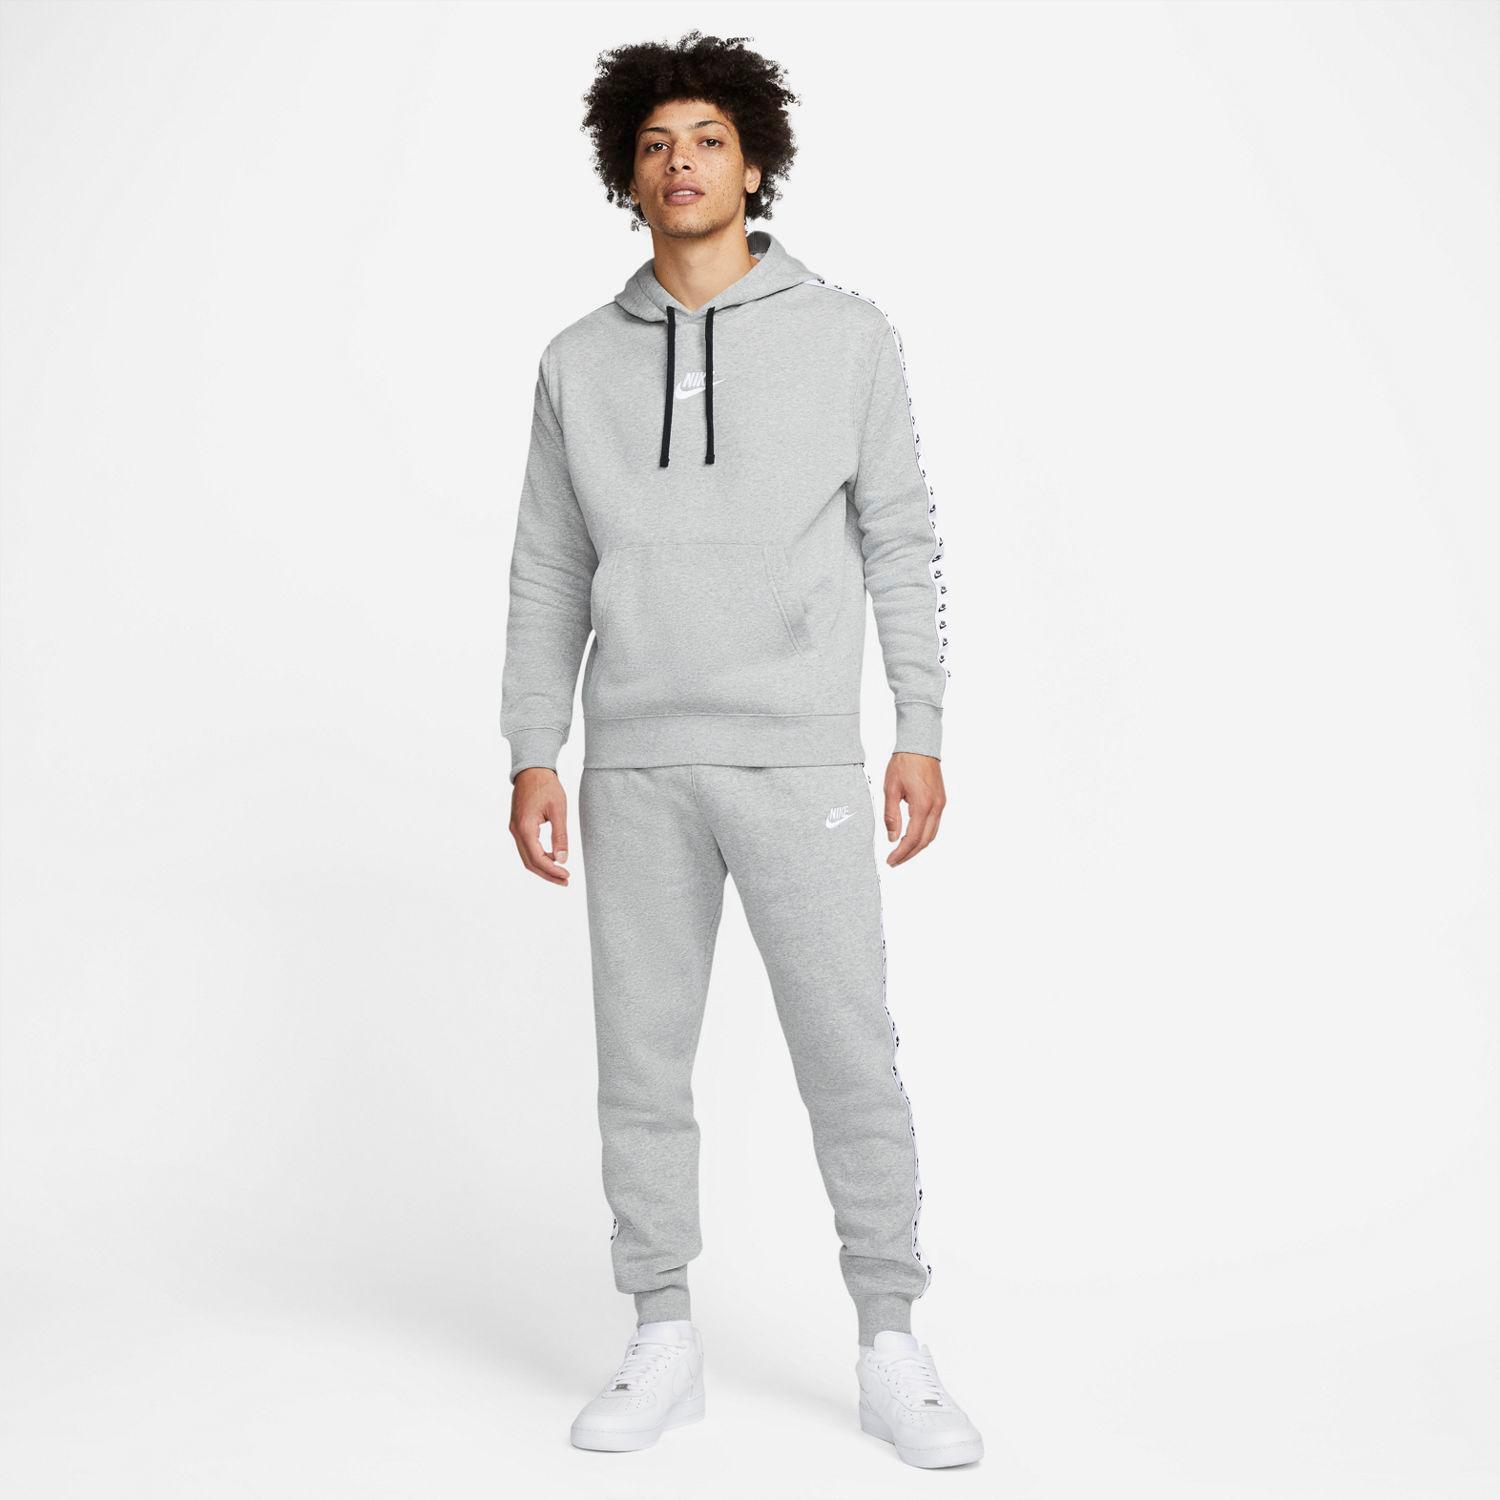 Nike Tape - Cinza - Sweatshirt Homem tamanho S